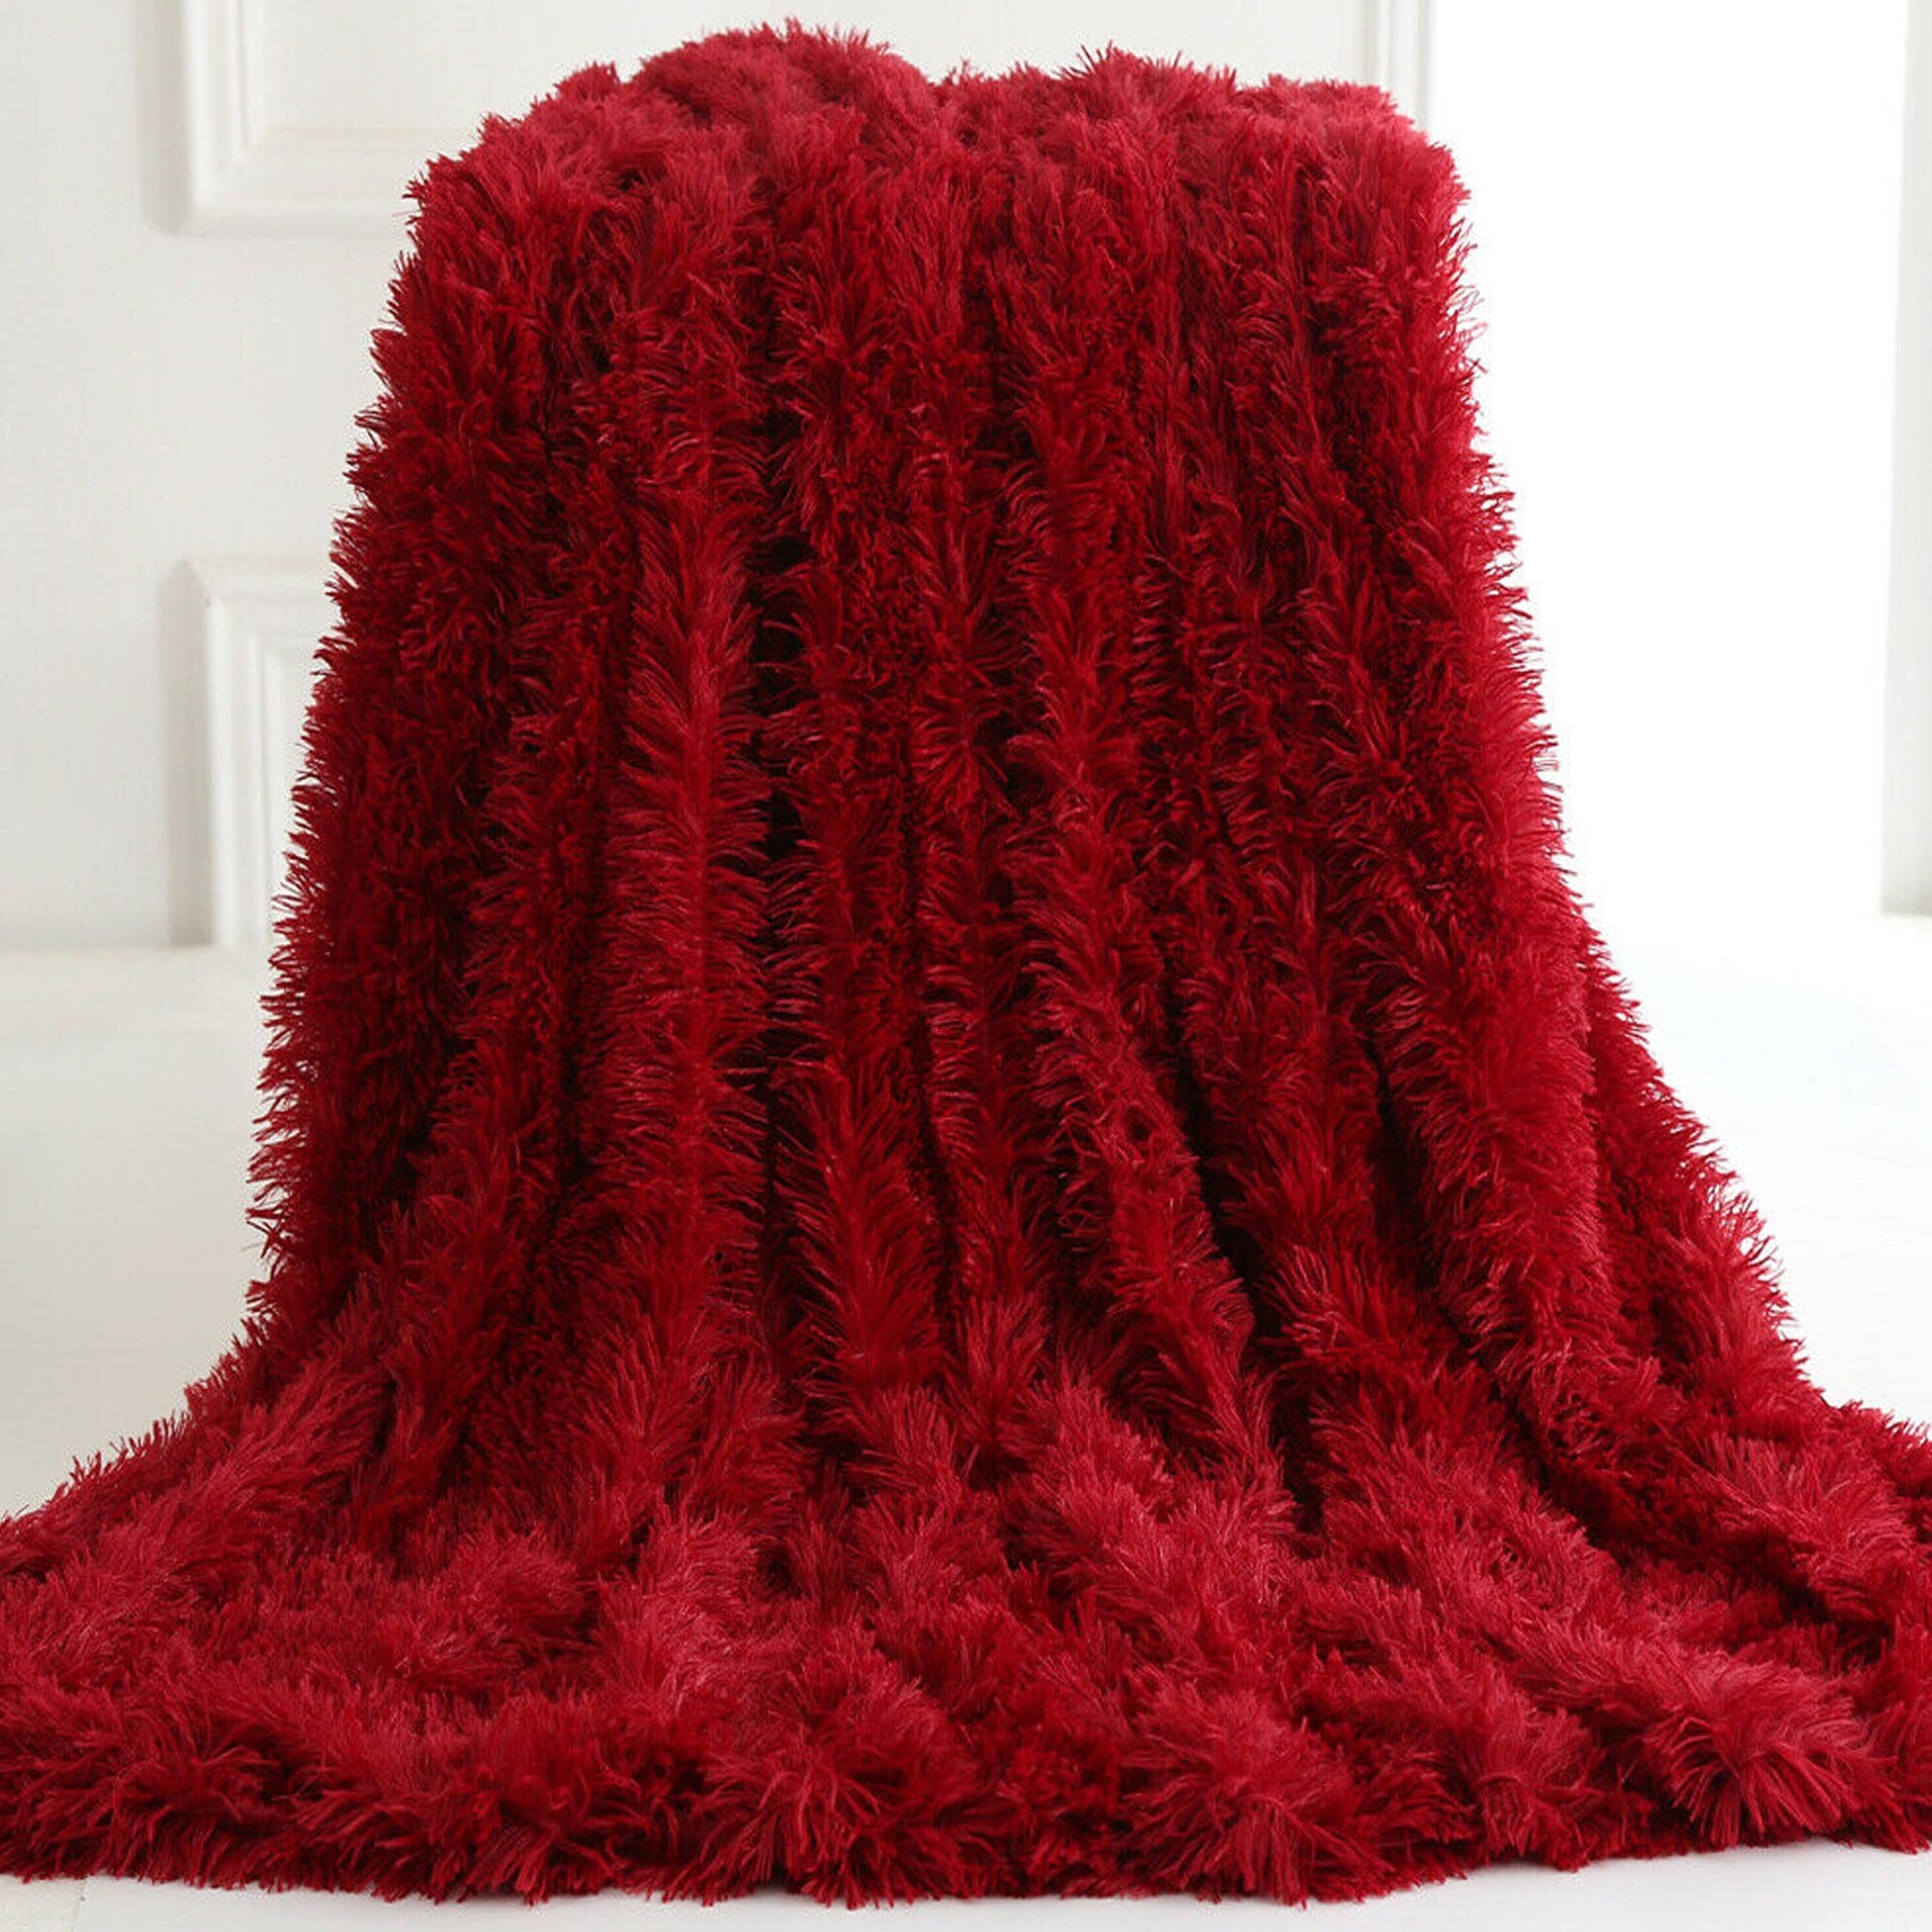 Plush Faux Fur Throw Blanket Reversible Purple - Bed Bath & Beyond -  33503596